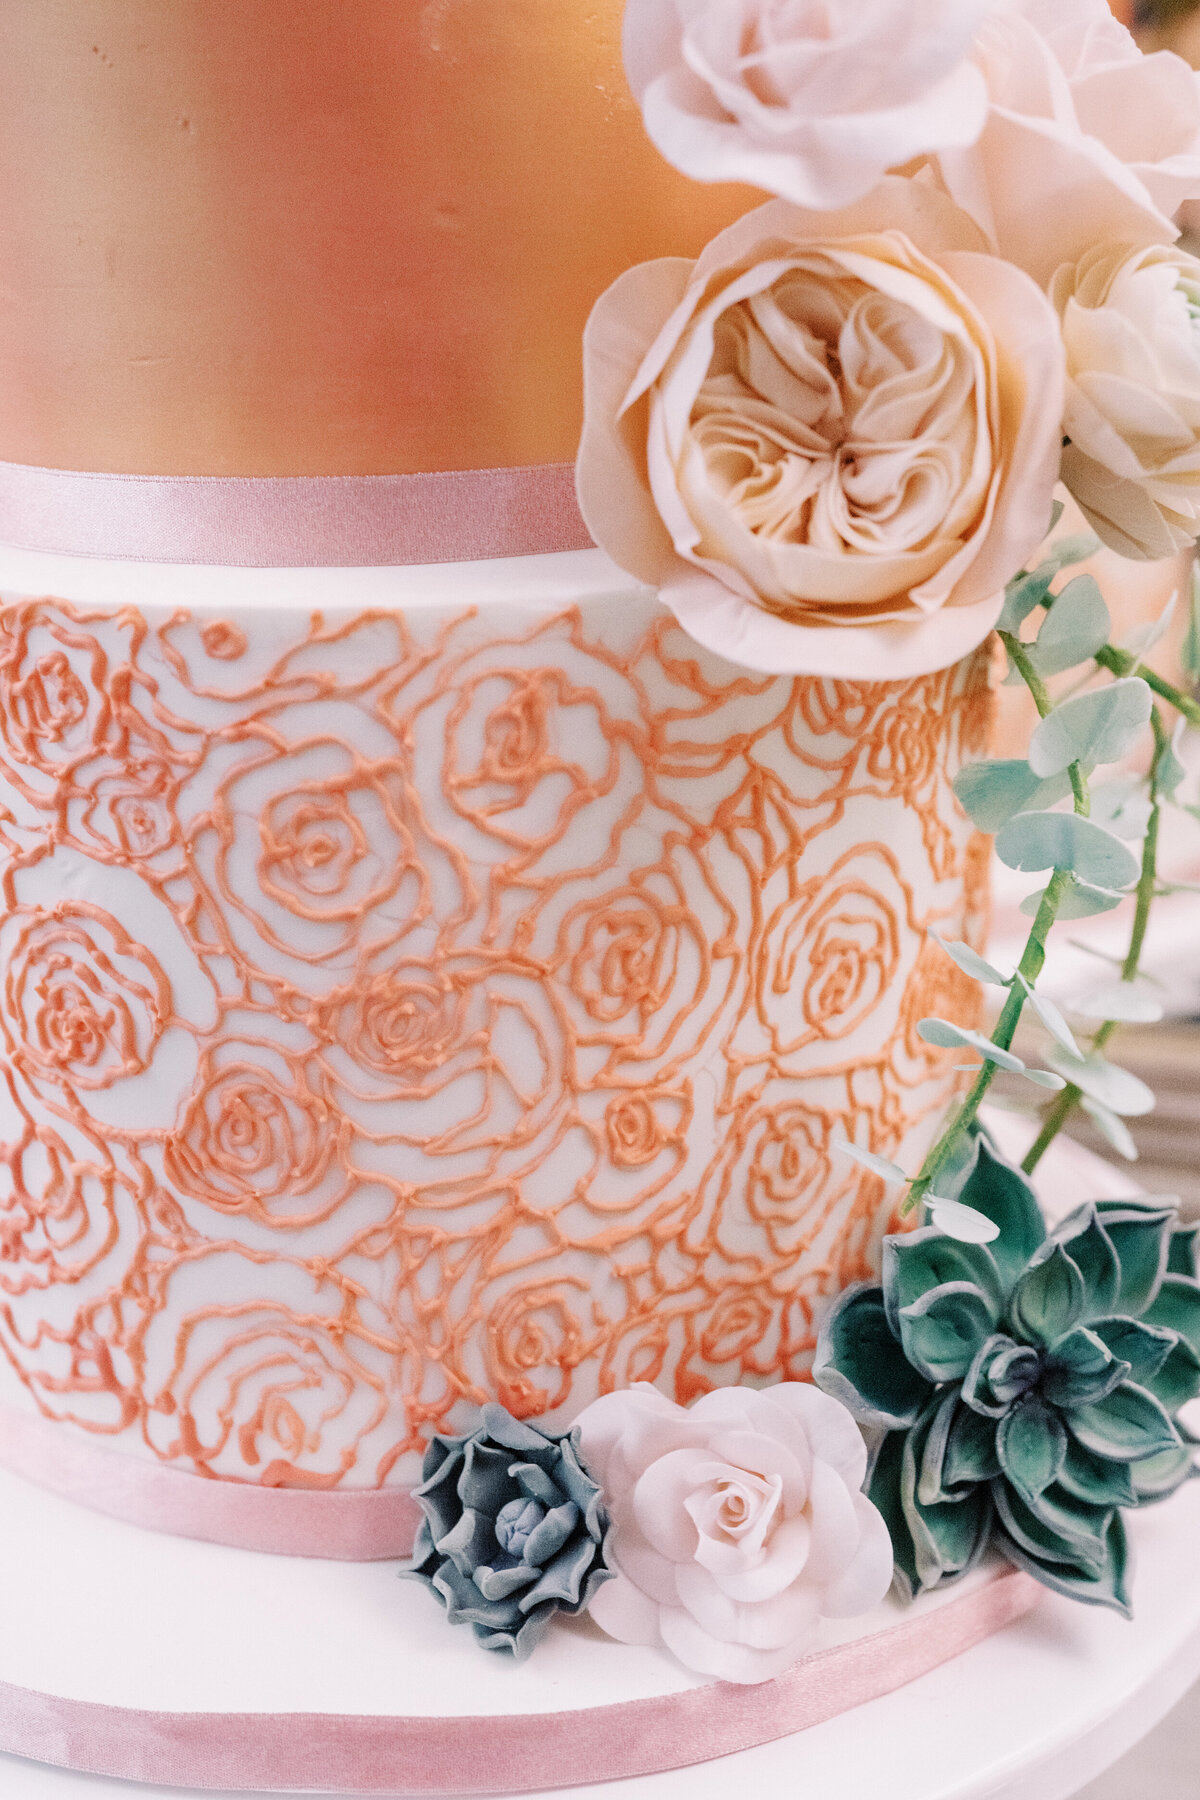 rose gold cake flower details